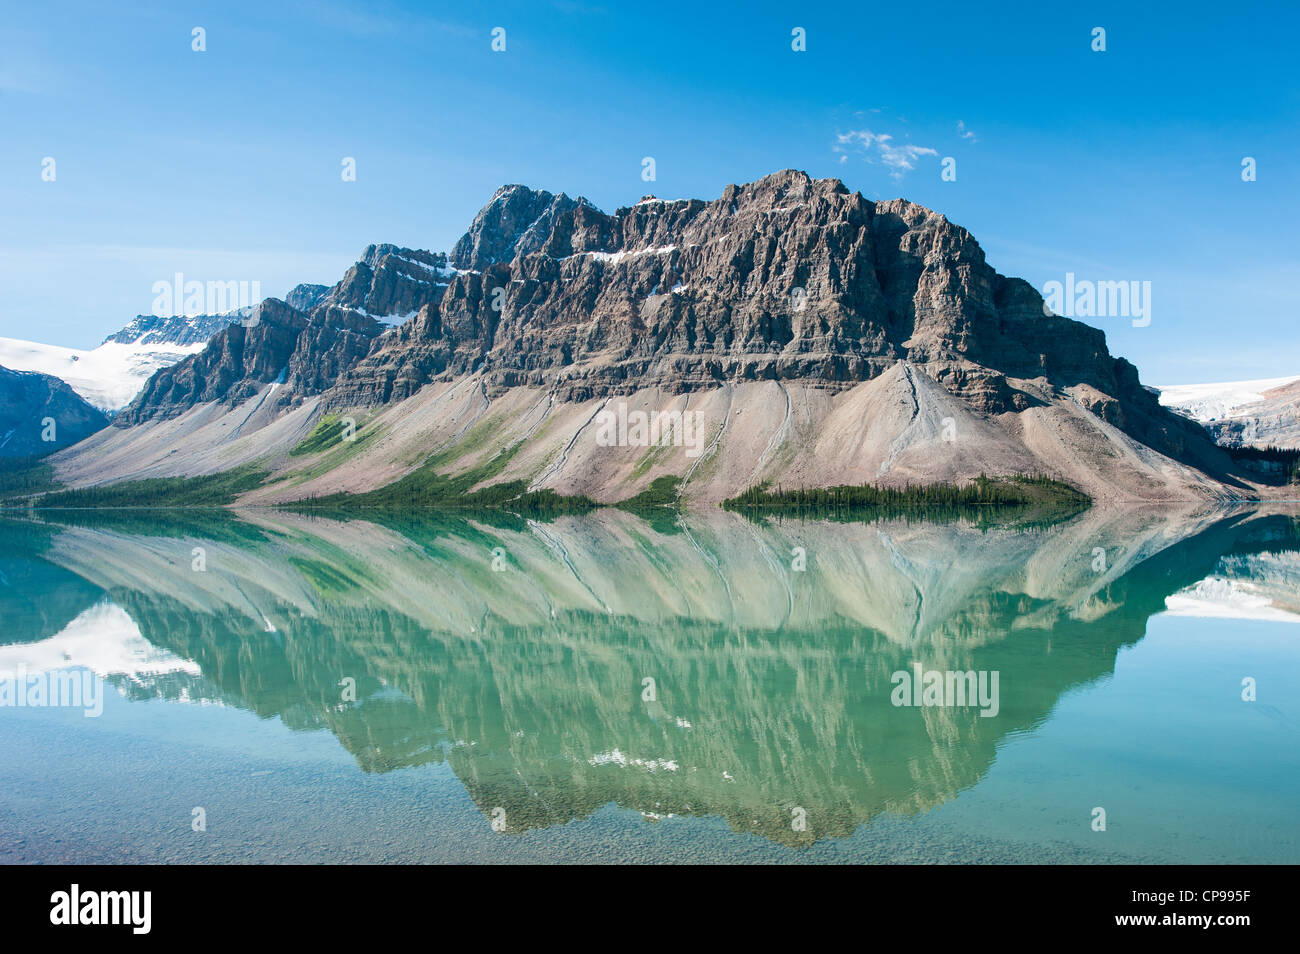 Le lac Bow, dans le parc national Banff, Canada Banque D'Images